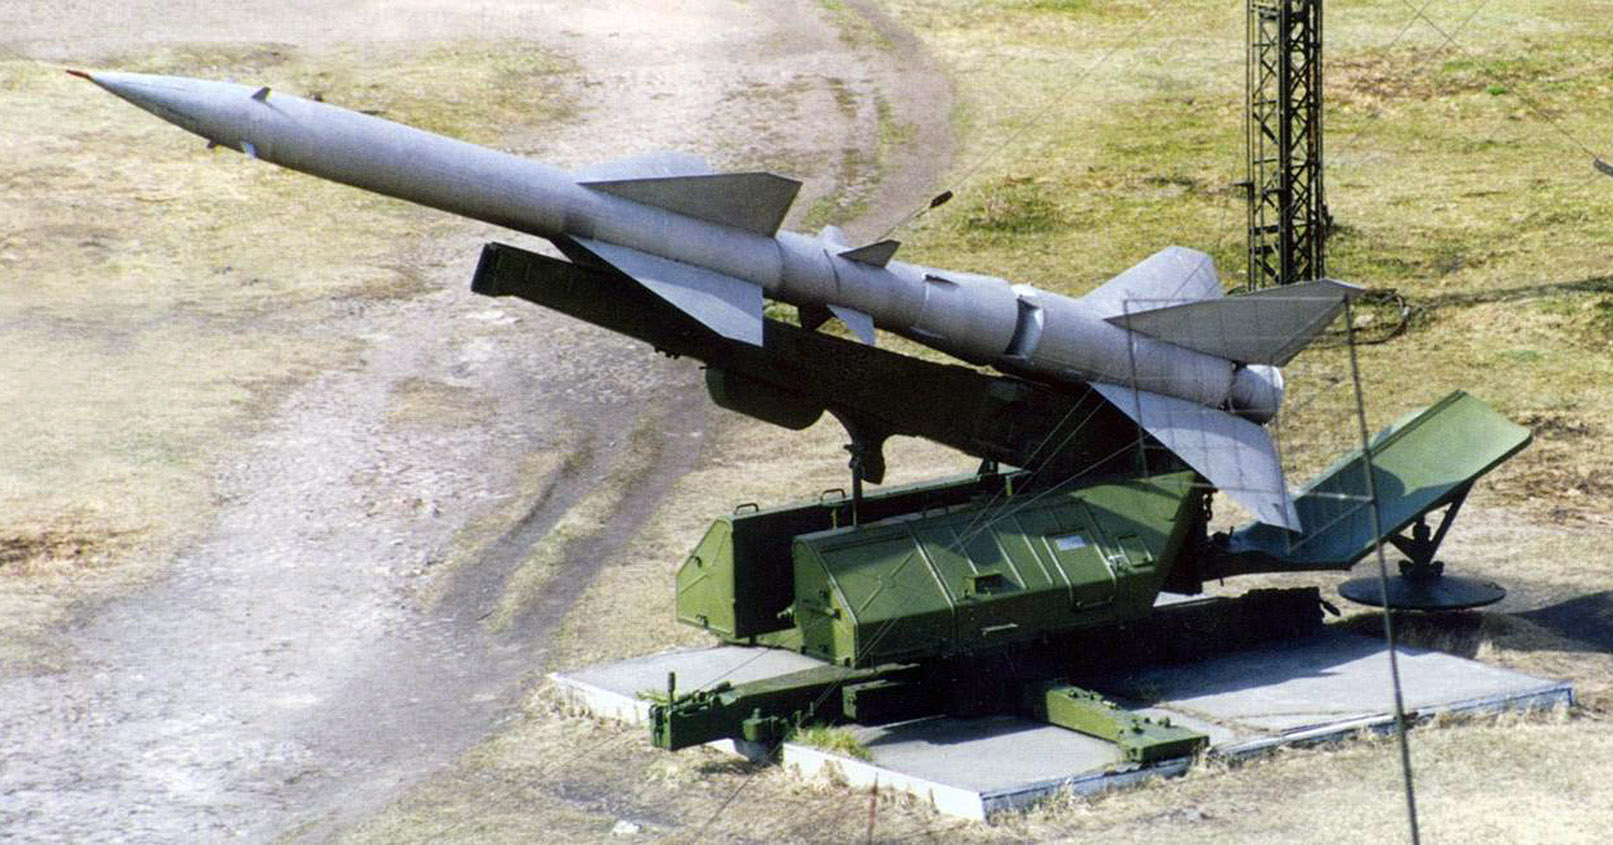 S 75 12. Зенитный ракетный комплекс с-75 «Двина». Ракета ЗРК С-75 Двина. С-75 зенитный ракетный комплекс Волхов. Са-75 Двина.